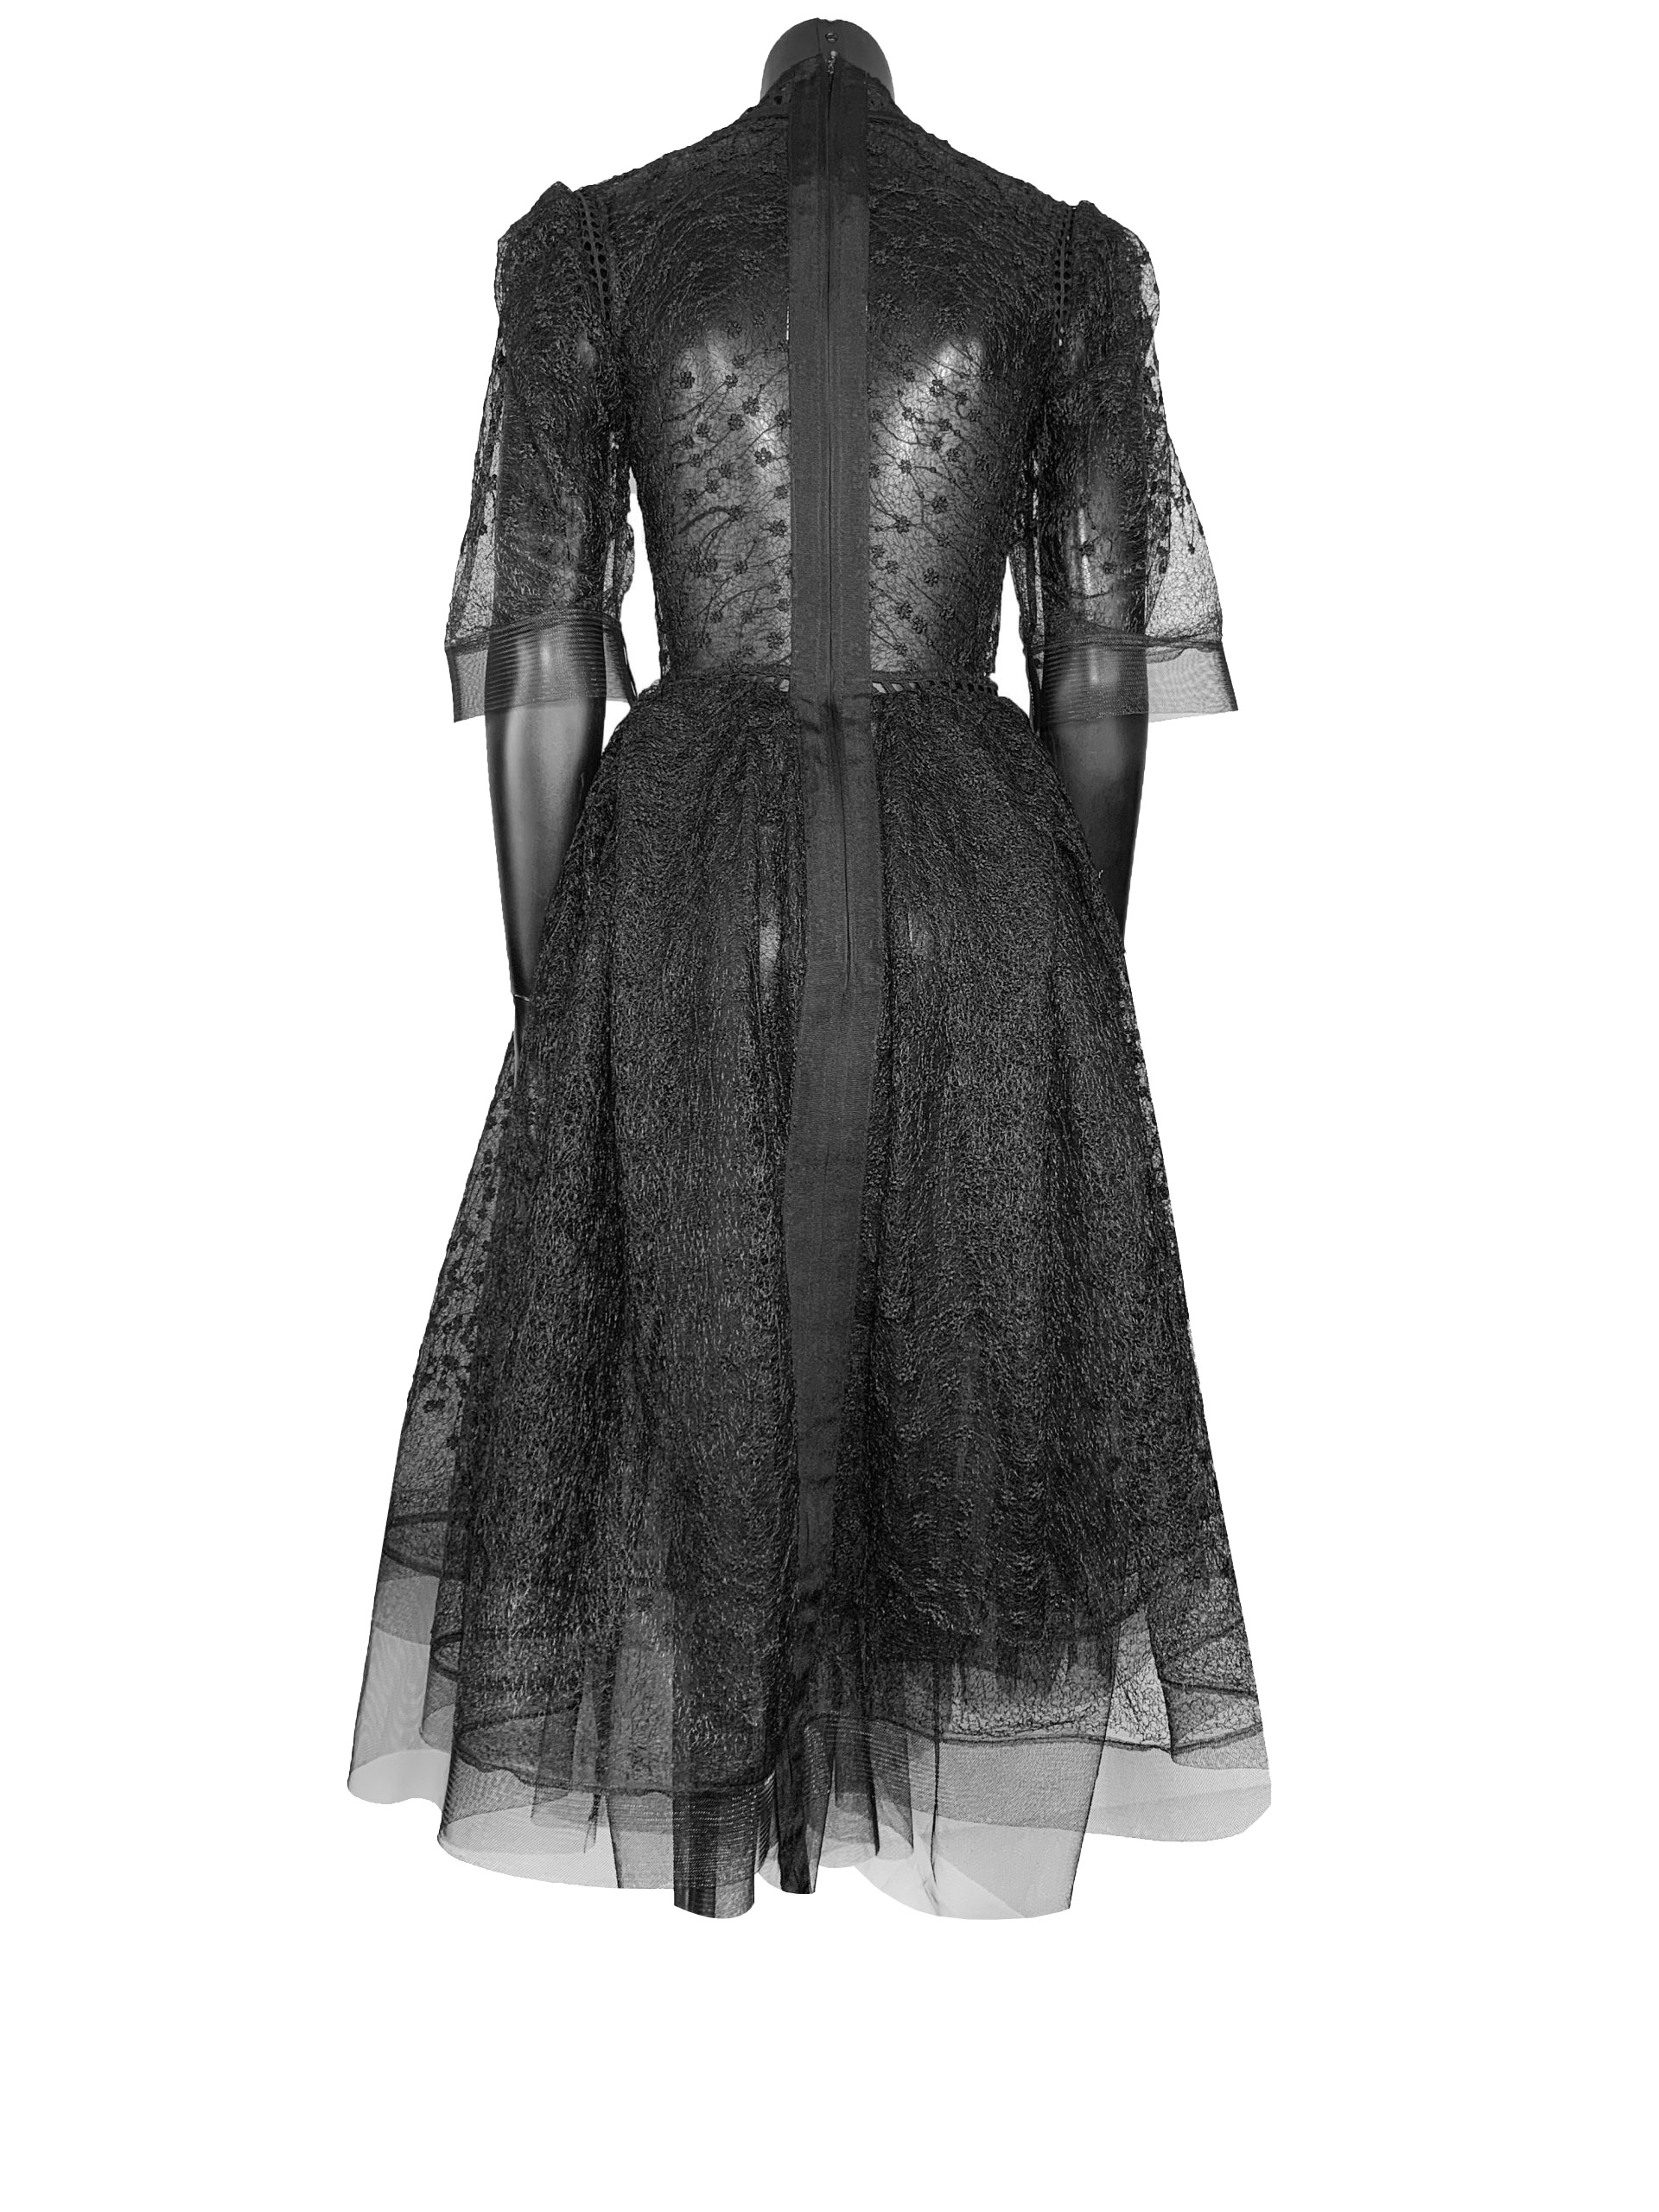 FLORAL LACE DRESS - BLACK - Denis Gagnon - Vêtements pour femmes et  Mobilier Vintage - Montréal